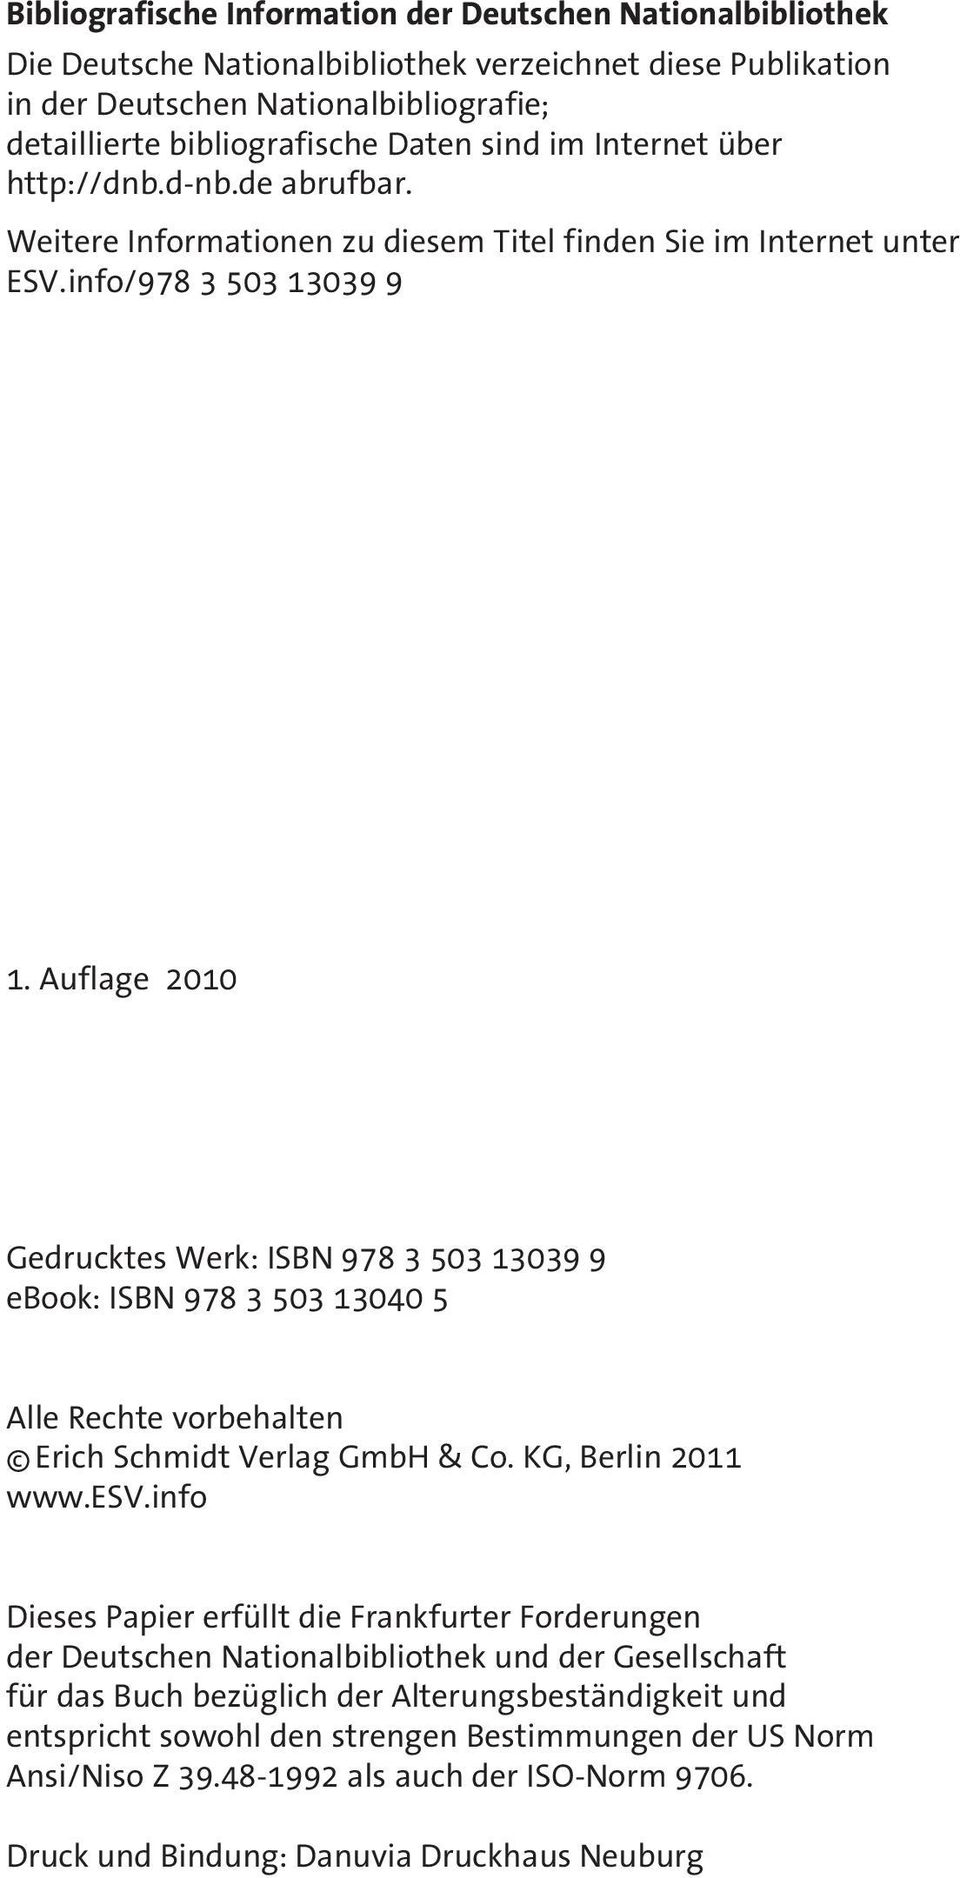 Auflage 2010 Gedrucktes Werk: ISBN 978 3 503 13039 9 ebook: ISBN 978 3 503 13040 5 Alle Rechte vorbehalten Erich Schmidt Verlag GmbH & Co. KG, Berlin 2011 www.esv.